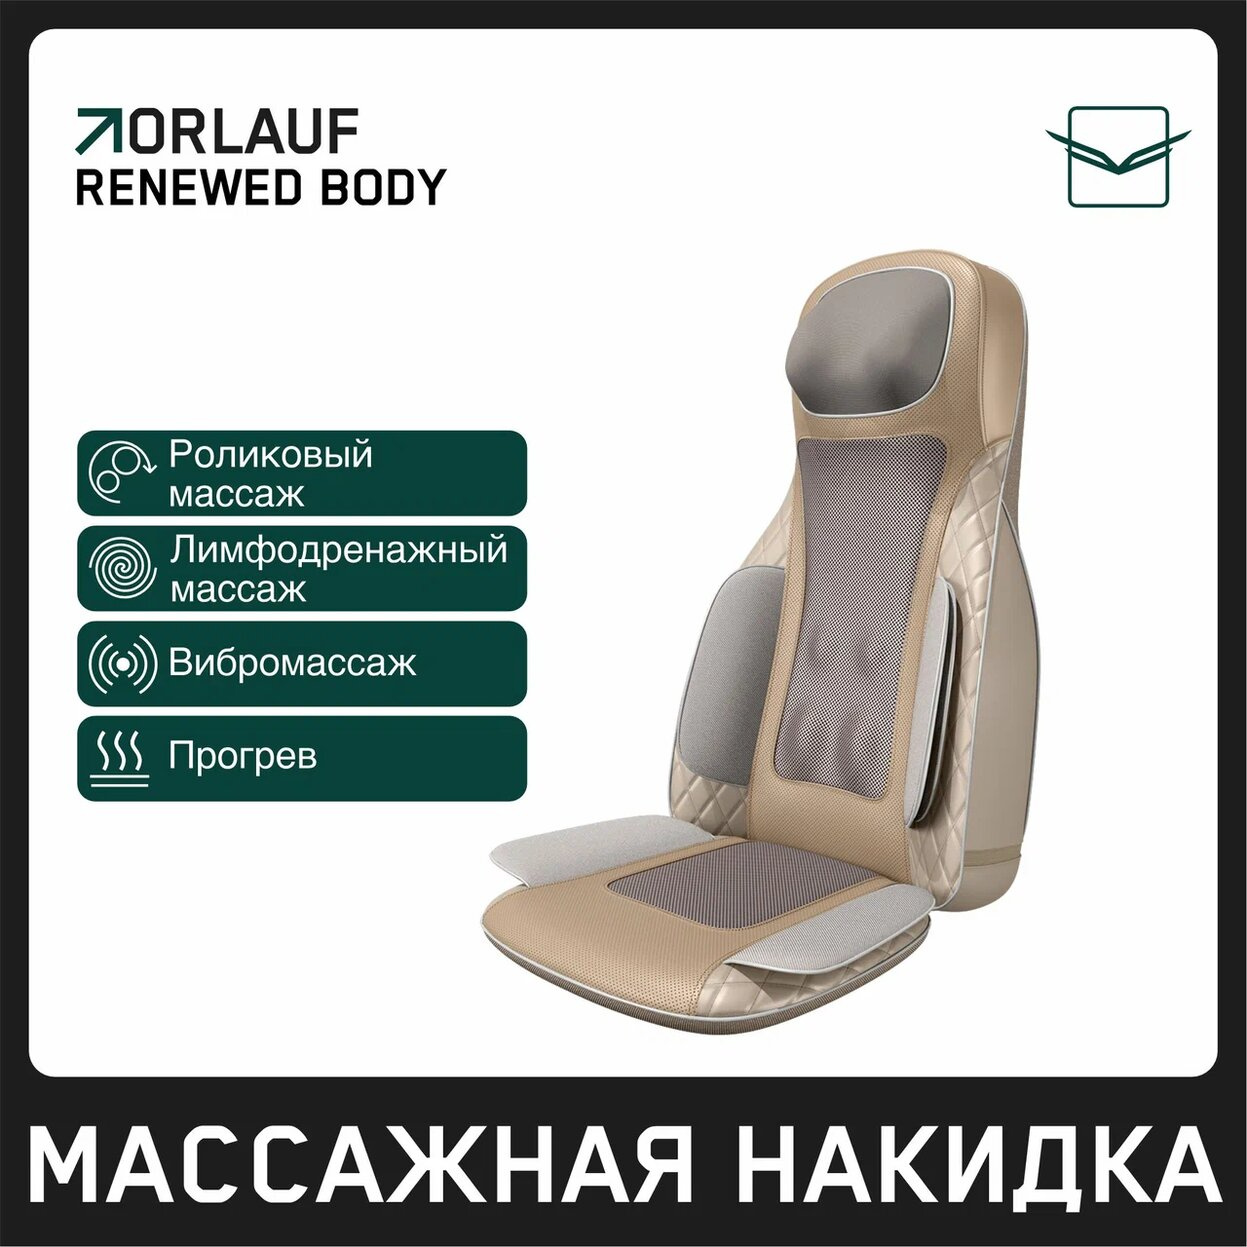 Orlauf Renewed Body из каталога массажных накидок в Челябинске по цене 39900 ₽